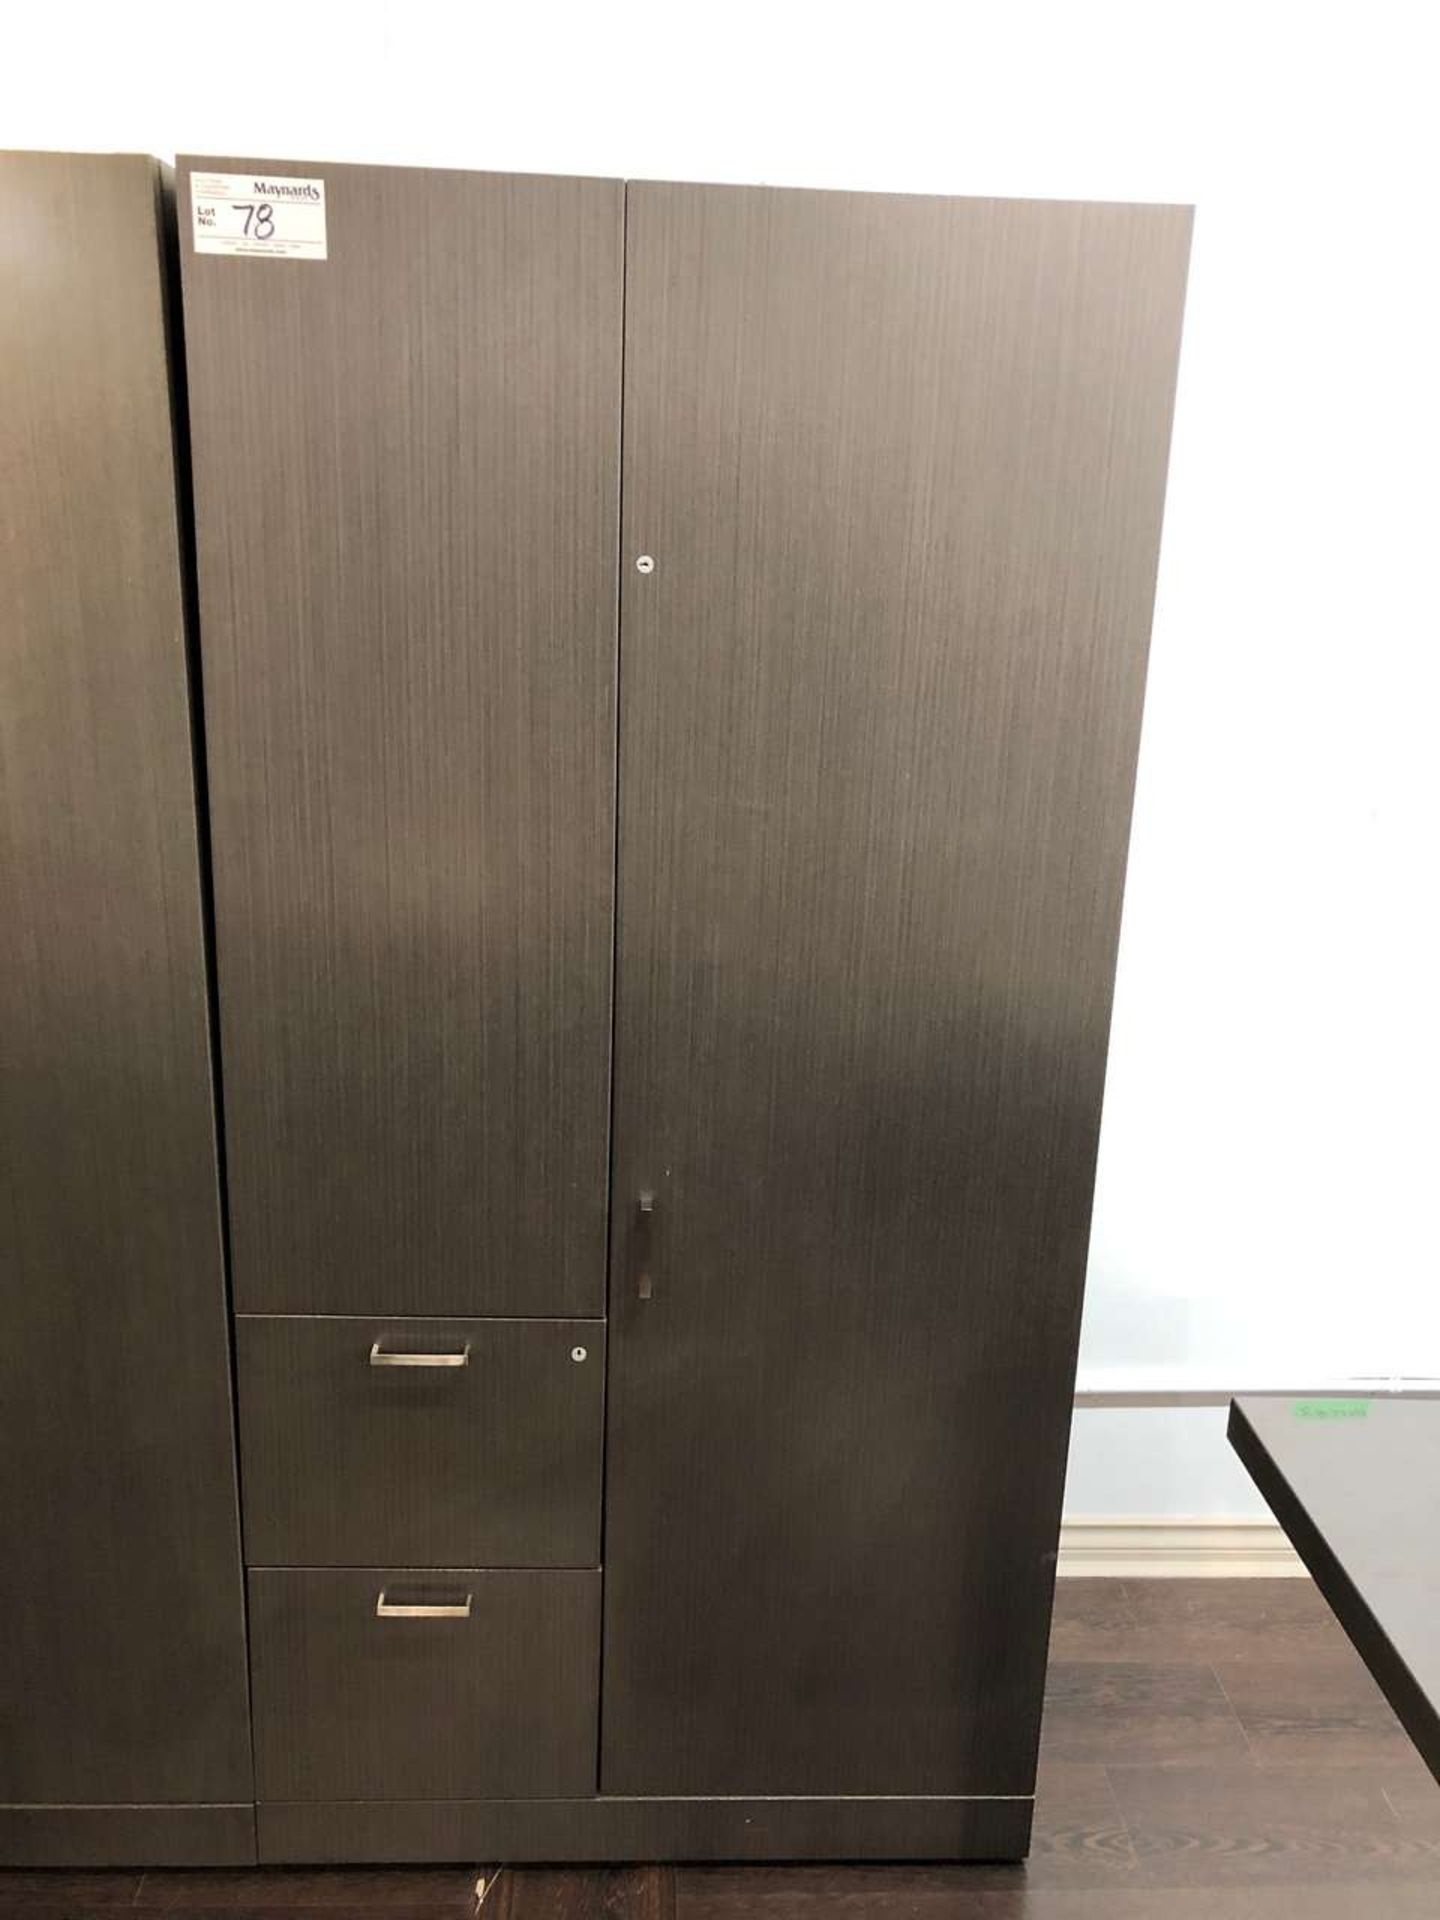 Knoll Executive office armoire